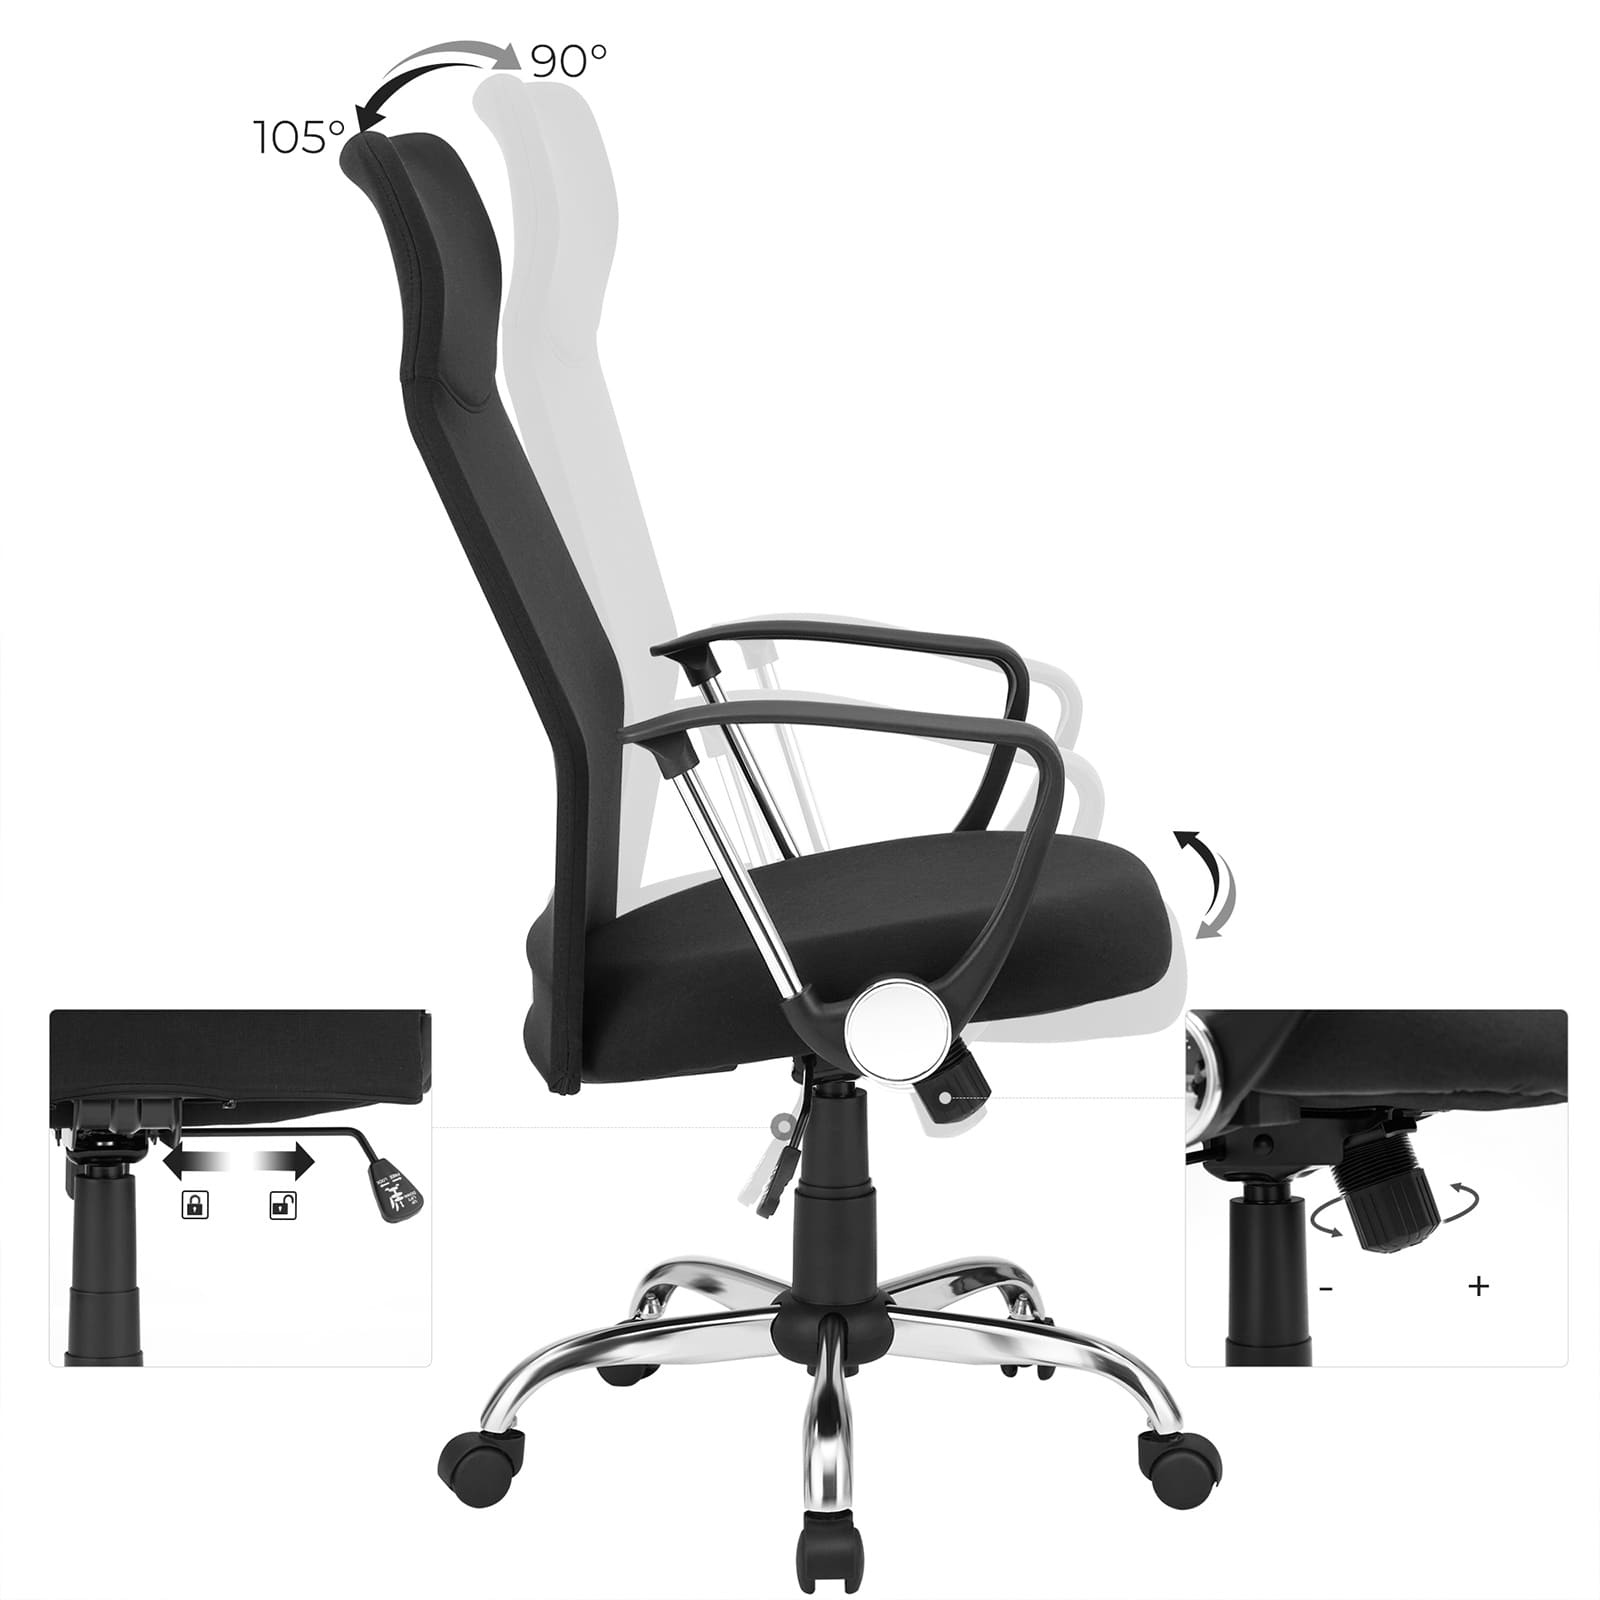 Chaise de bureau, chaise d'ordinateur, fauteuil roulant, angle d'assise 90-105 degrés - SONGMICS